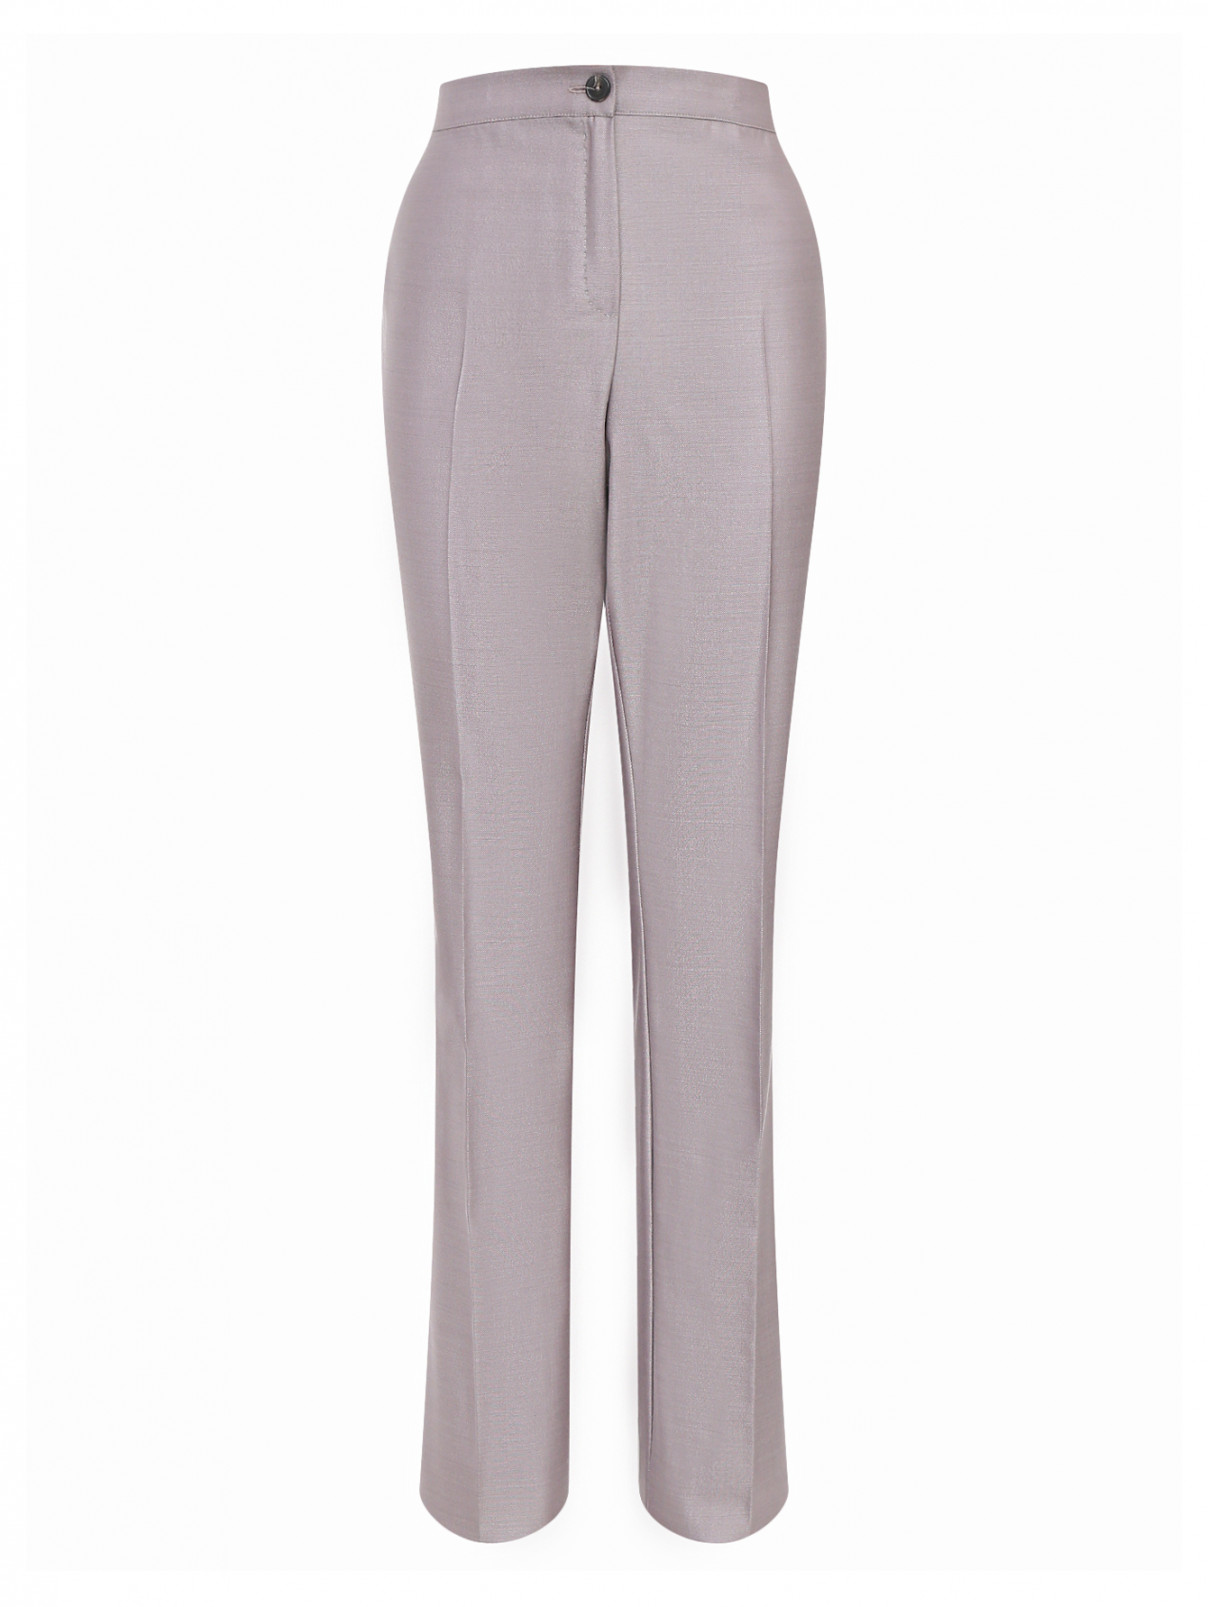 Прямые брюки из шерсти и шелка Marina Rinaldi  –  Общий вид  – Цвет:  Серый